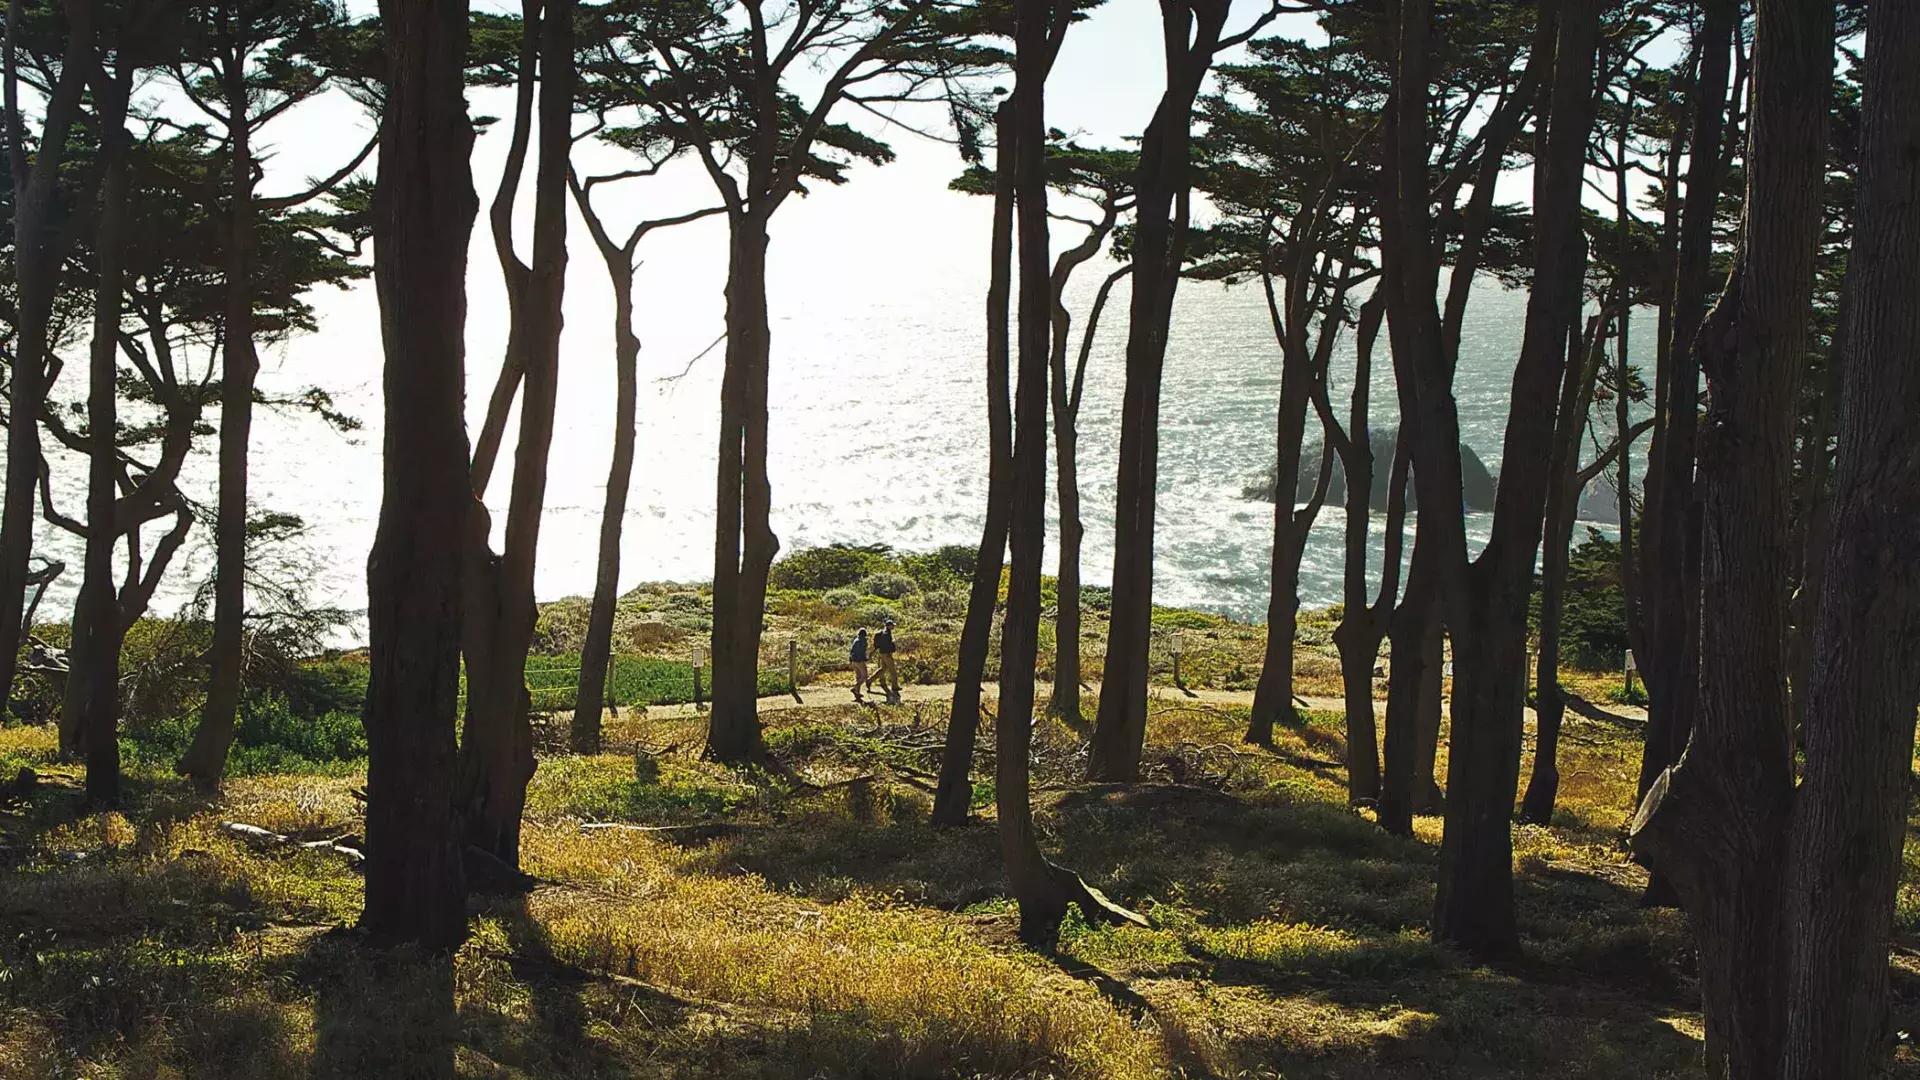 徒步旅行者沿着土地尽头小径的一段树木繁茂的路段行走, 以太平洋为背景.